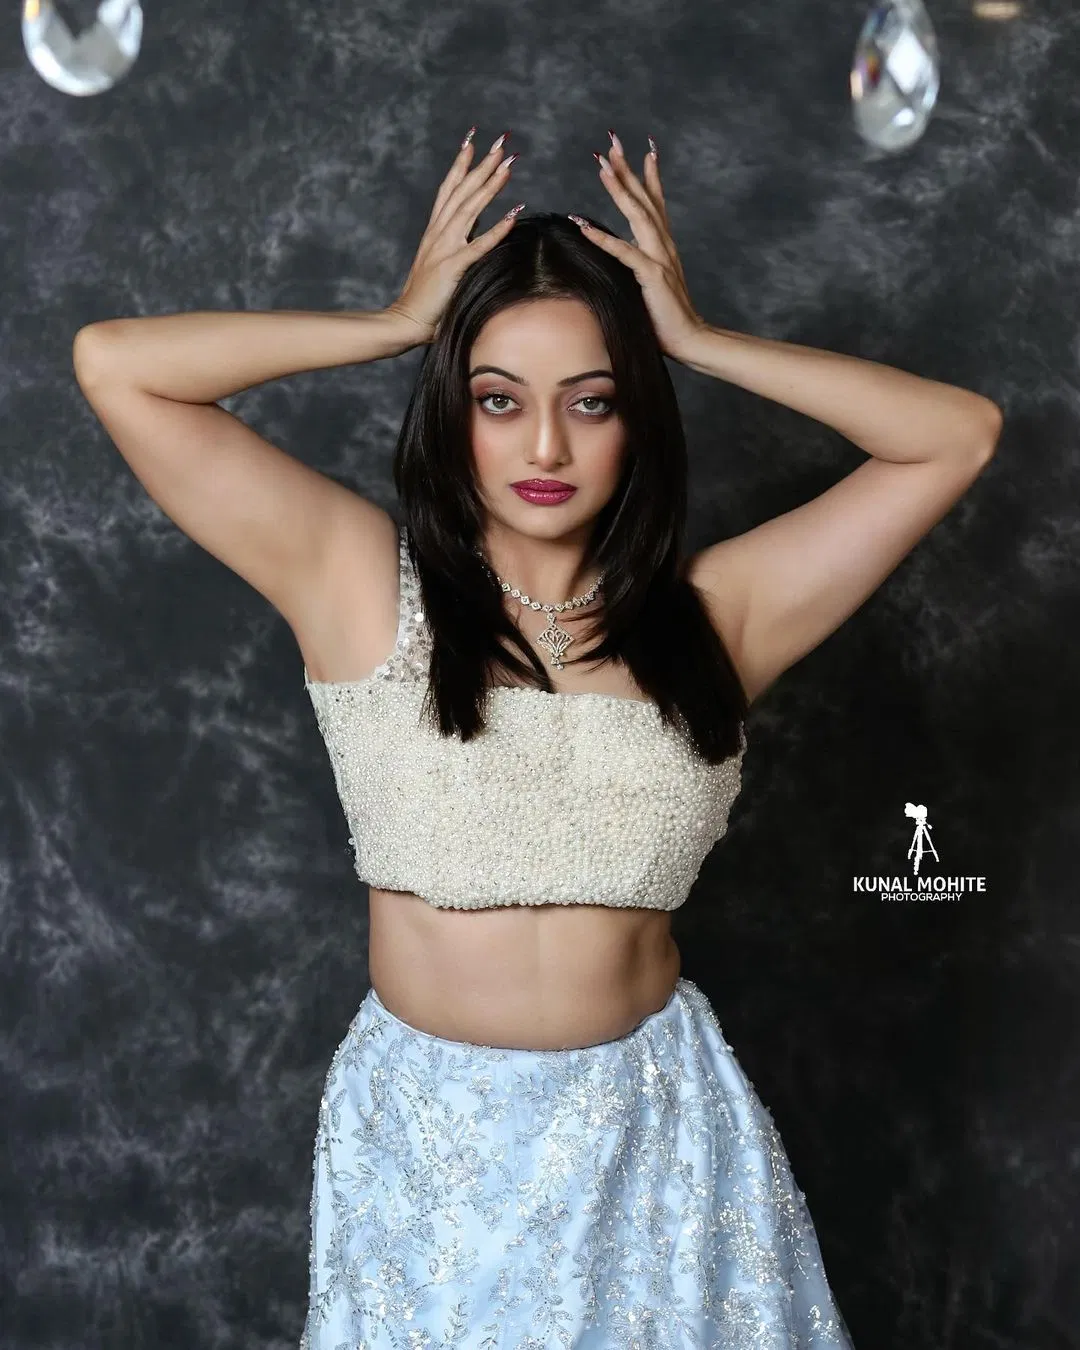 Mansi Naik Sex - Manasi Naik : à¤®à¤¾à¤¨à¤¸à¥€ à¤«à¤¿à¤—à¤° à¤¦à¤¾à¤–à¤µà¤¤ à¤®à¥à¤¹à¤£à¤¾à¤²à¥€, à¤¬à¤‚à¤¦à¤¾ à¤—à¥à¤°à¥‡à¤Ÿ à¤ªà¤° à¤®à¤¿à¤²à¤¾ à¤²à¥‡à¤Ÿ â€“ TV9  Marathi | Lavani Queen Marathi Actress Manasi Naik Hot Look Photo Viral  Au132